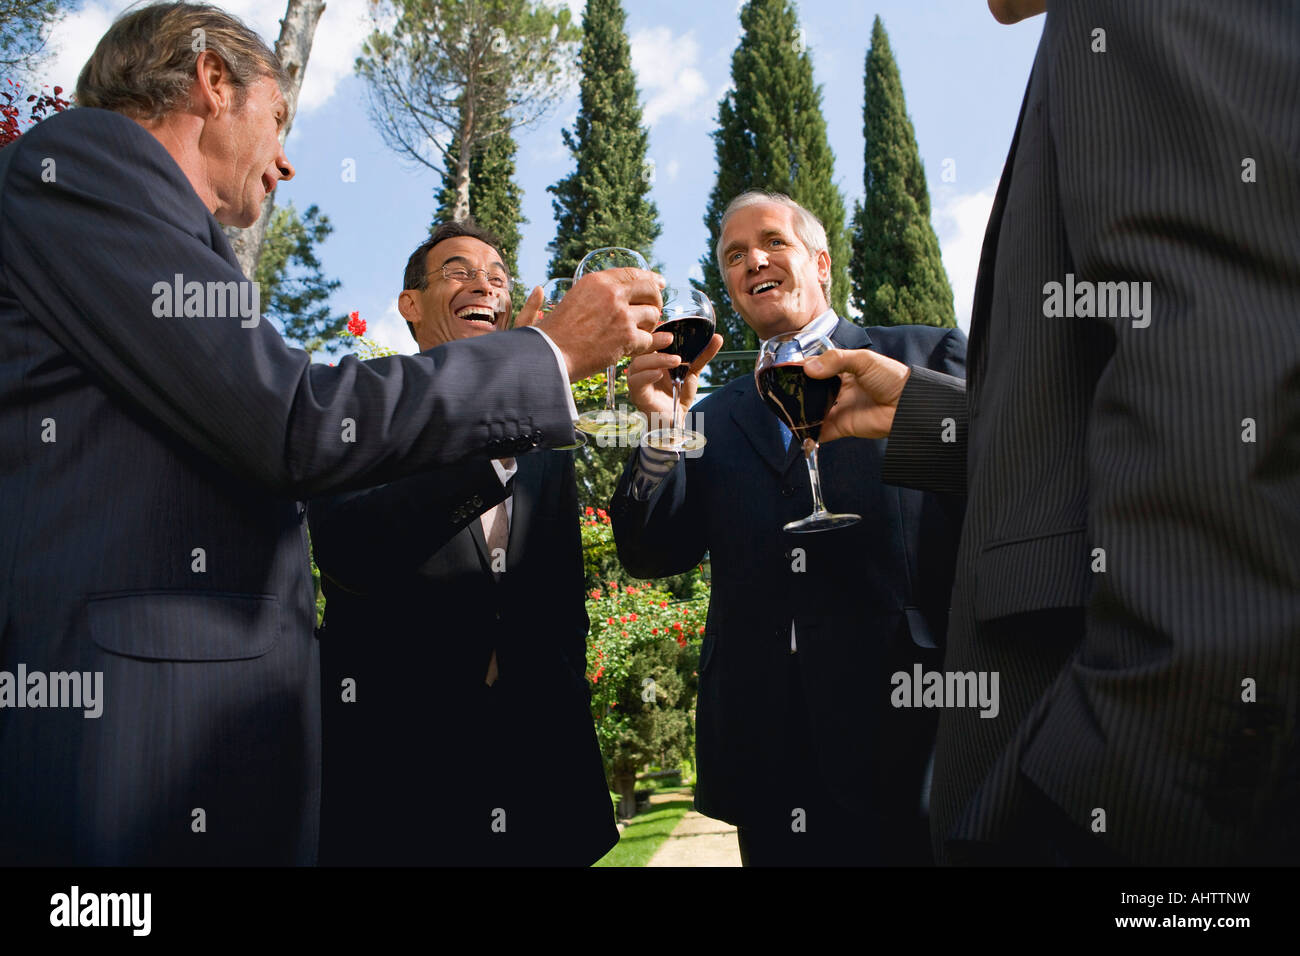 Quatre hommes d'boire du vin dans un jardin Banque D'Images